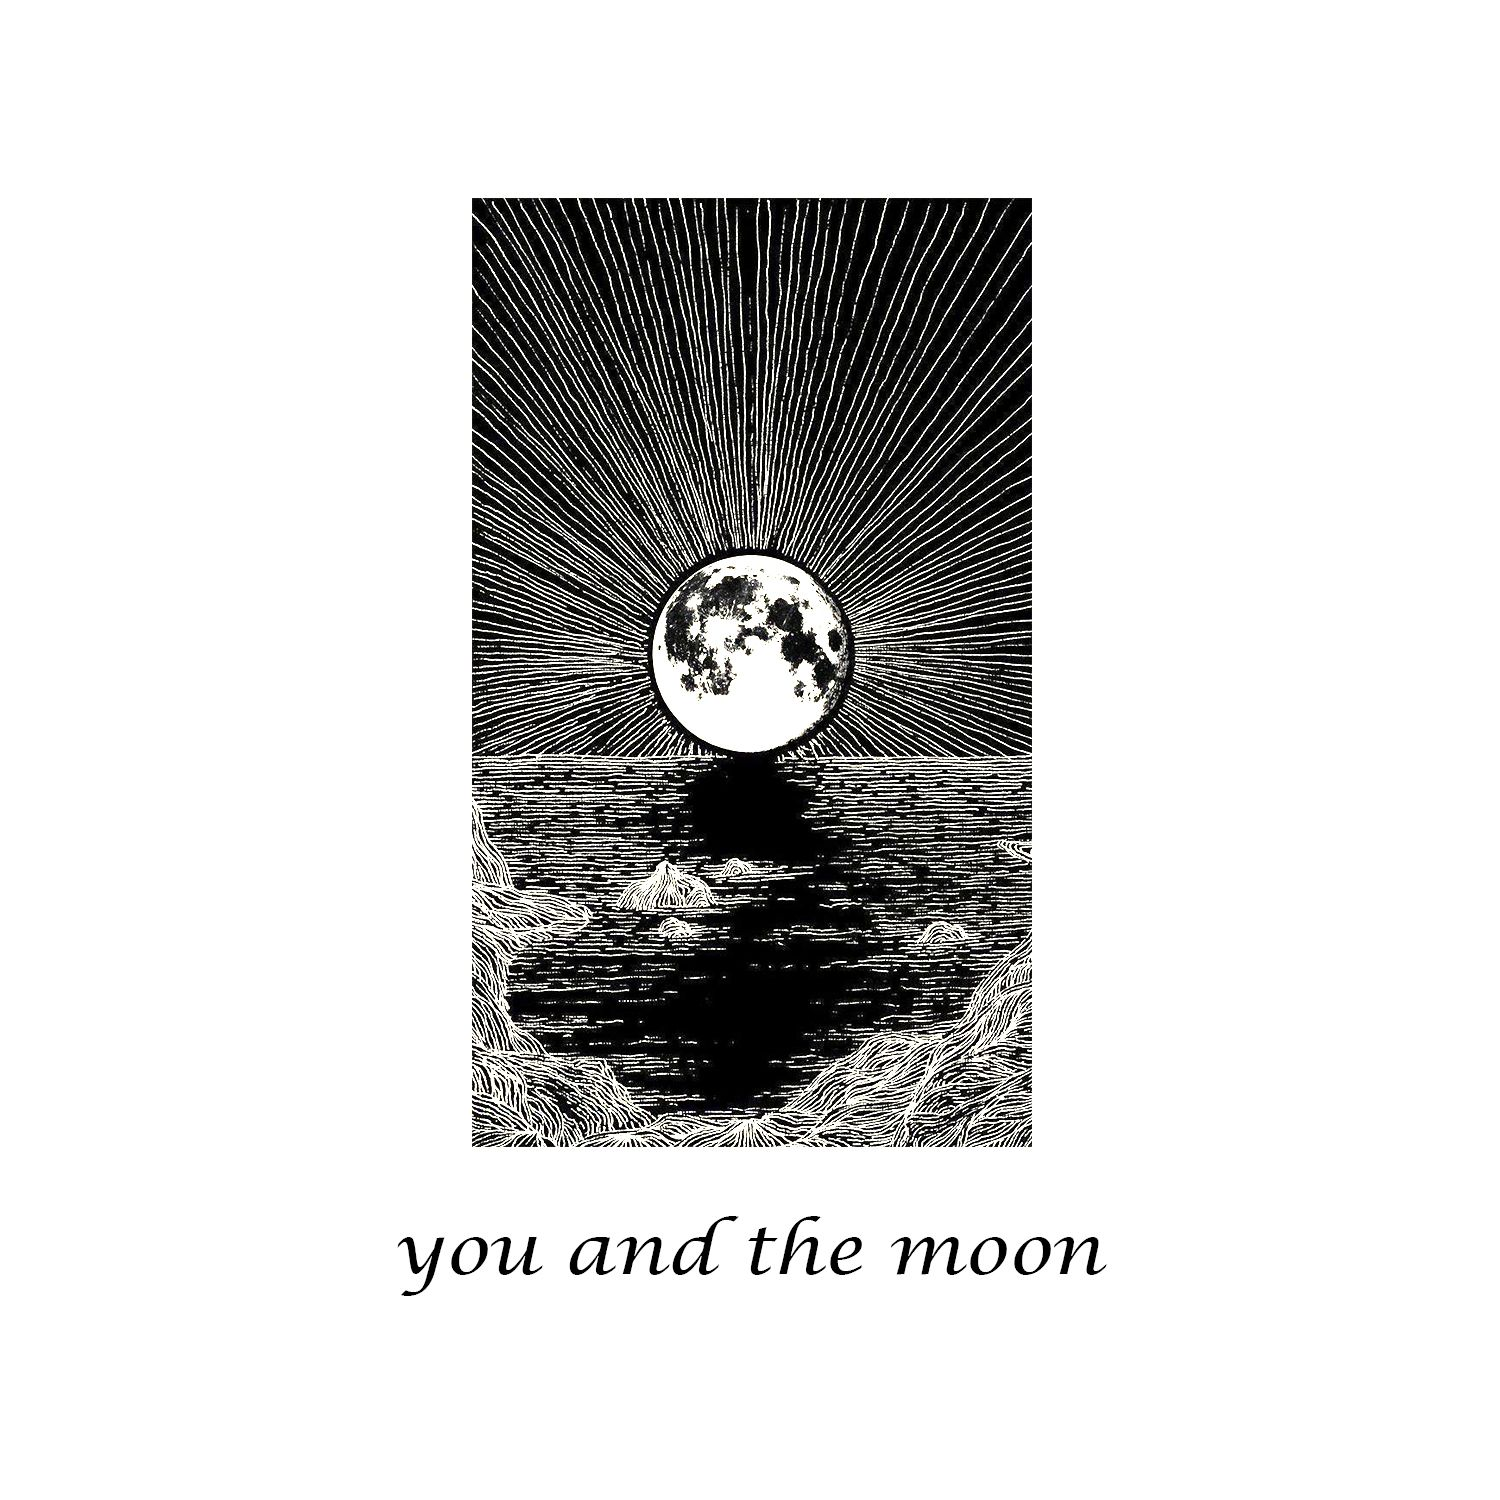 you and the moon歌词 歌手SEA / mia smith-专辑you and the moon-单曲《you and the moon》LRC歌词下载